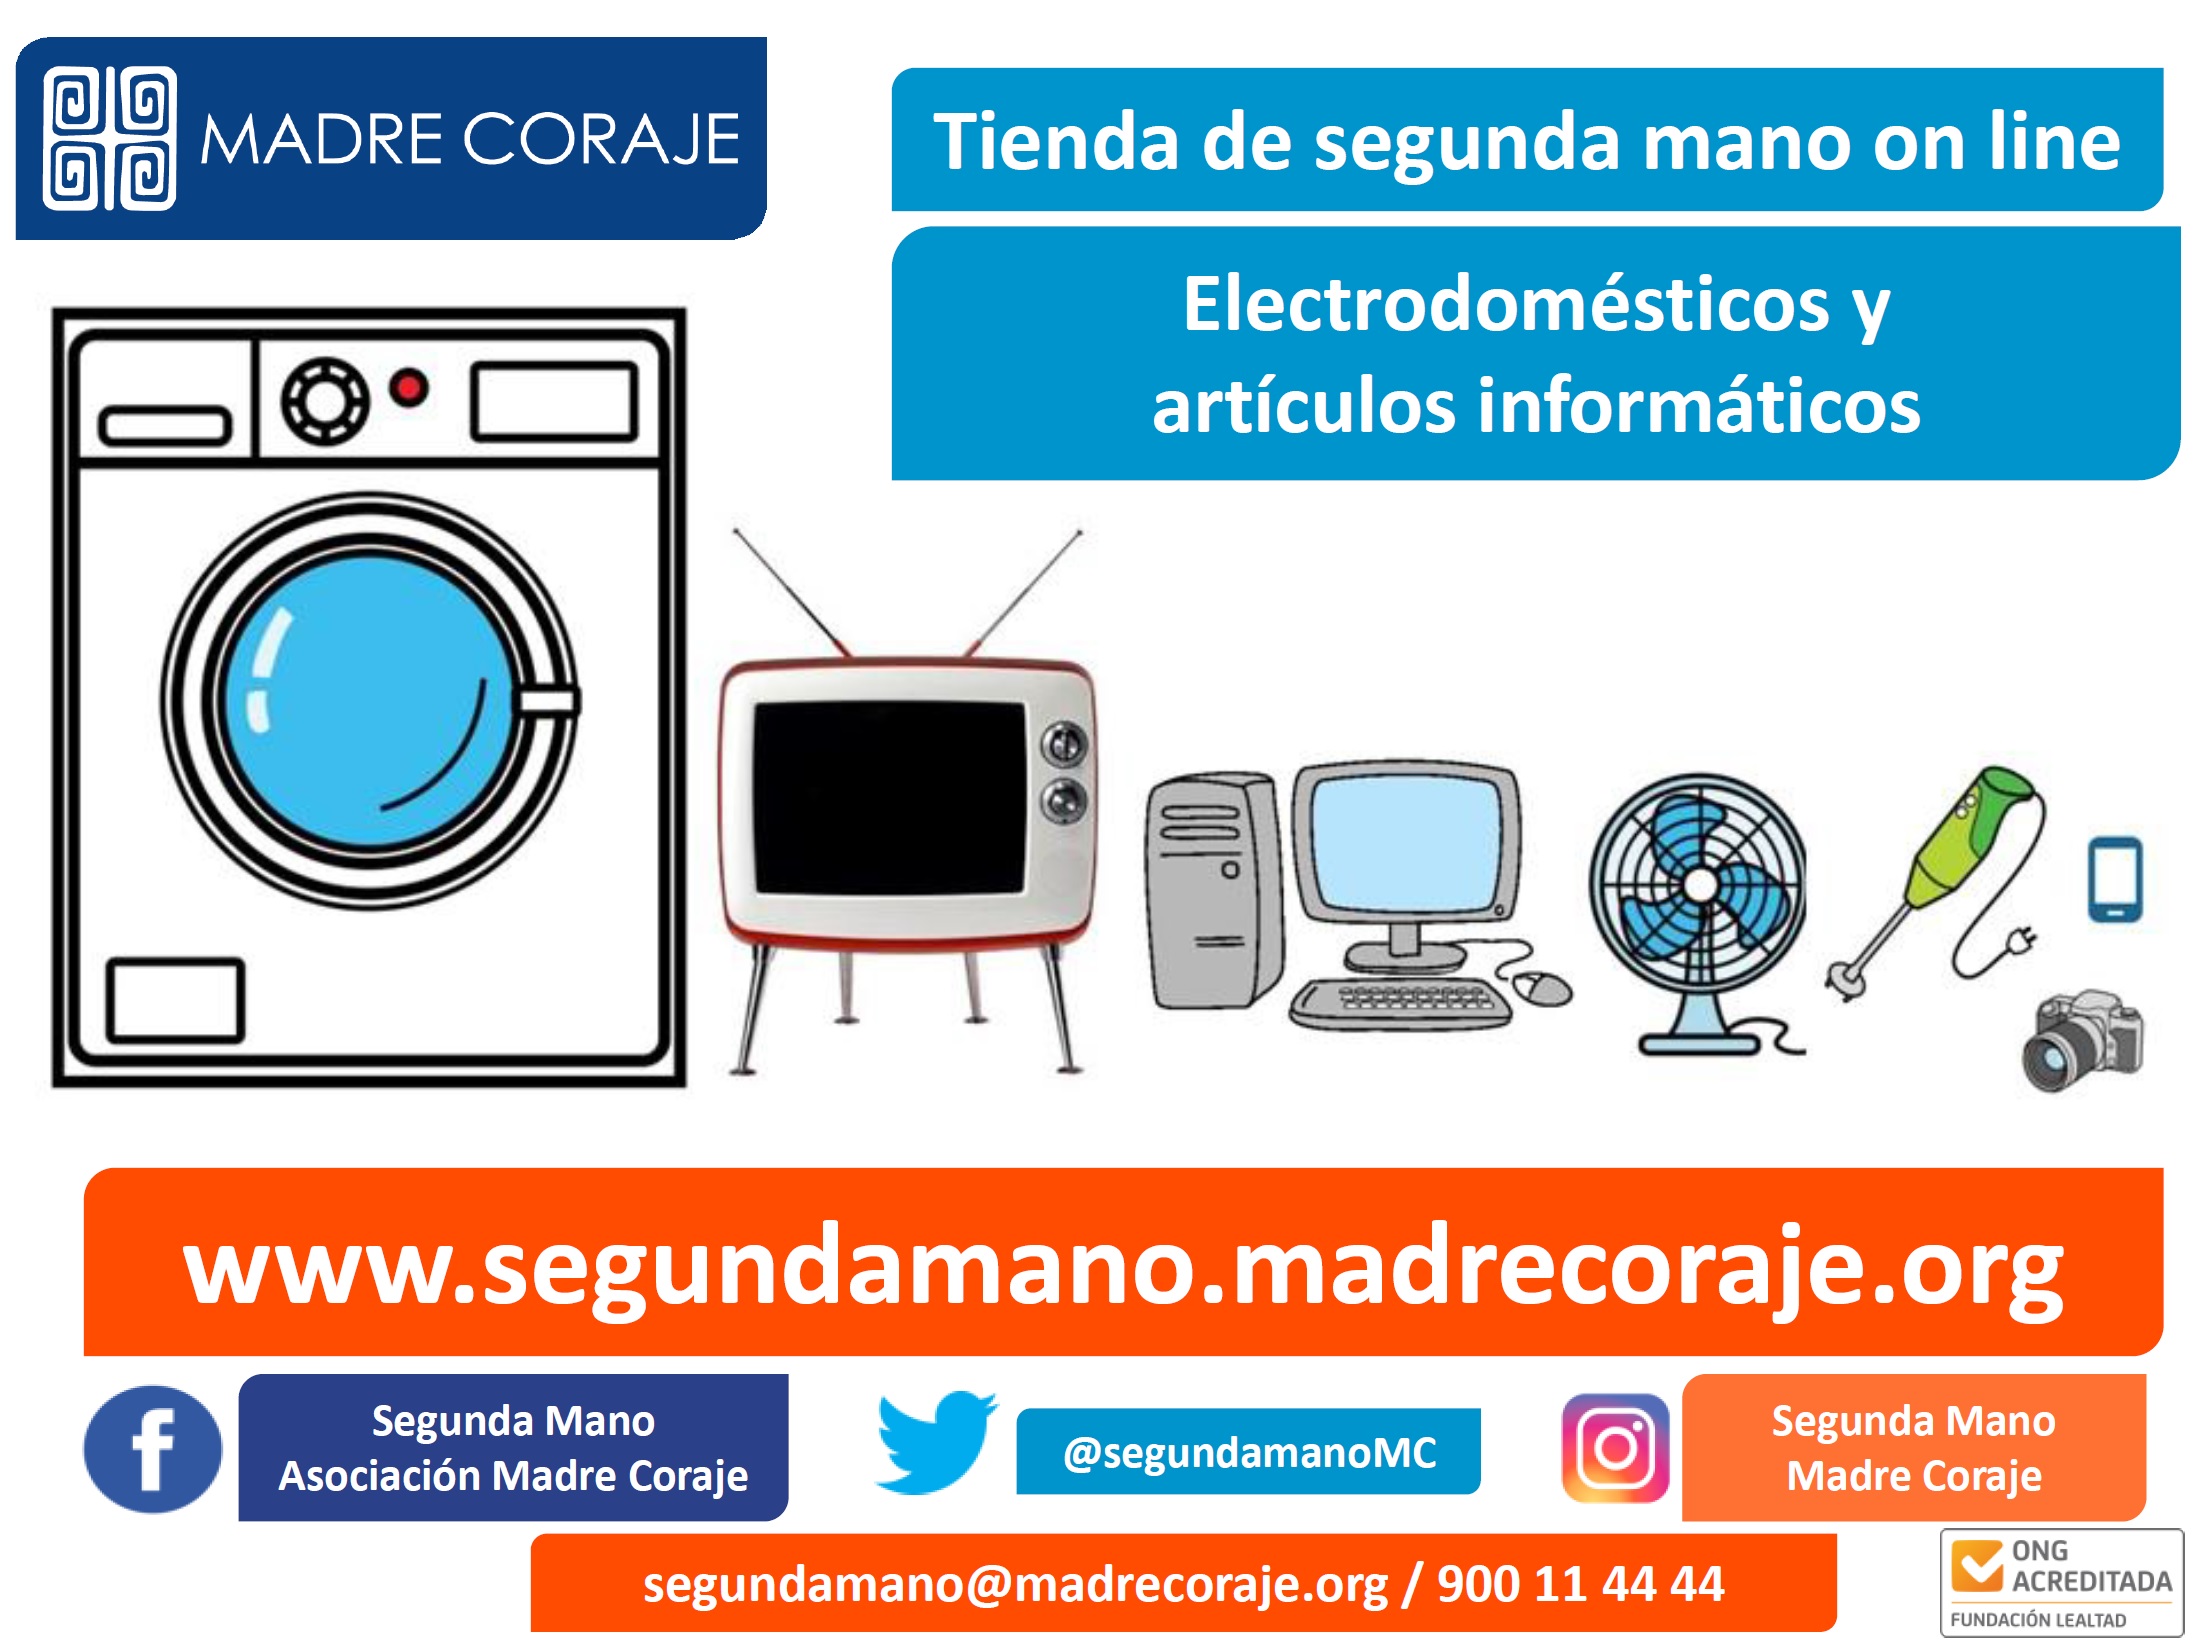 Madre Coraje abre una tienda de segunda mano on line de electrodomésticos y  artículos informáticos - AFA - Asociaciones y Fundaciones Andaluzas